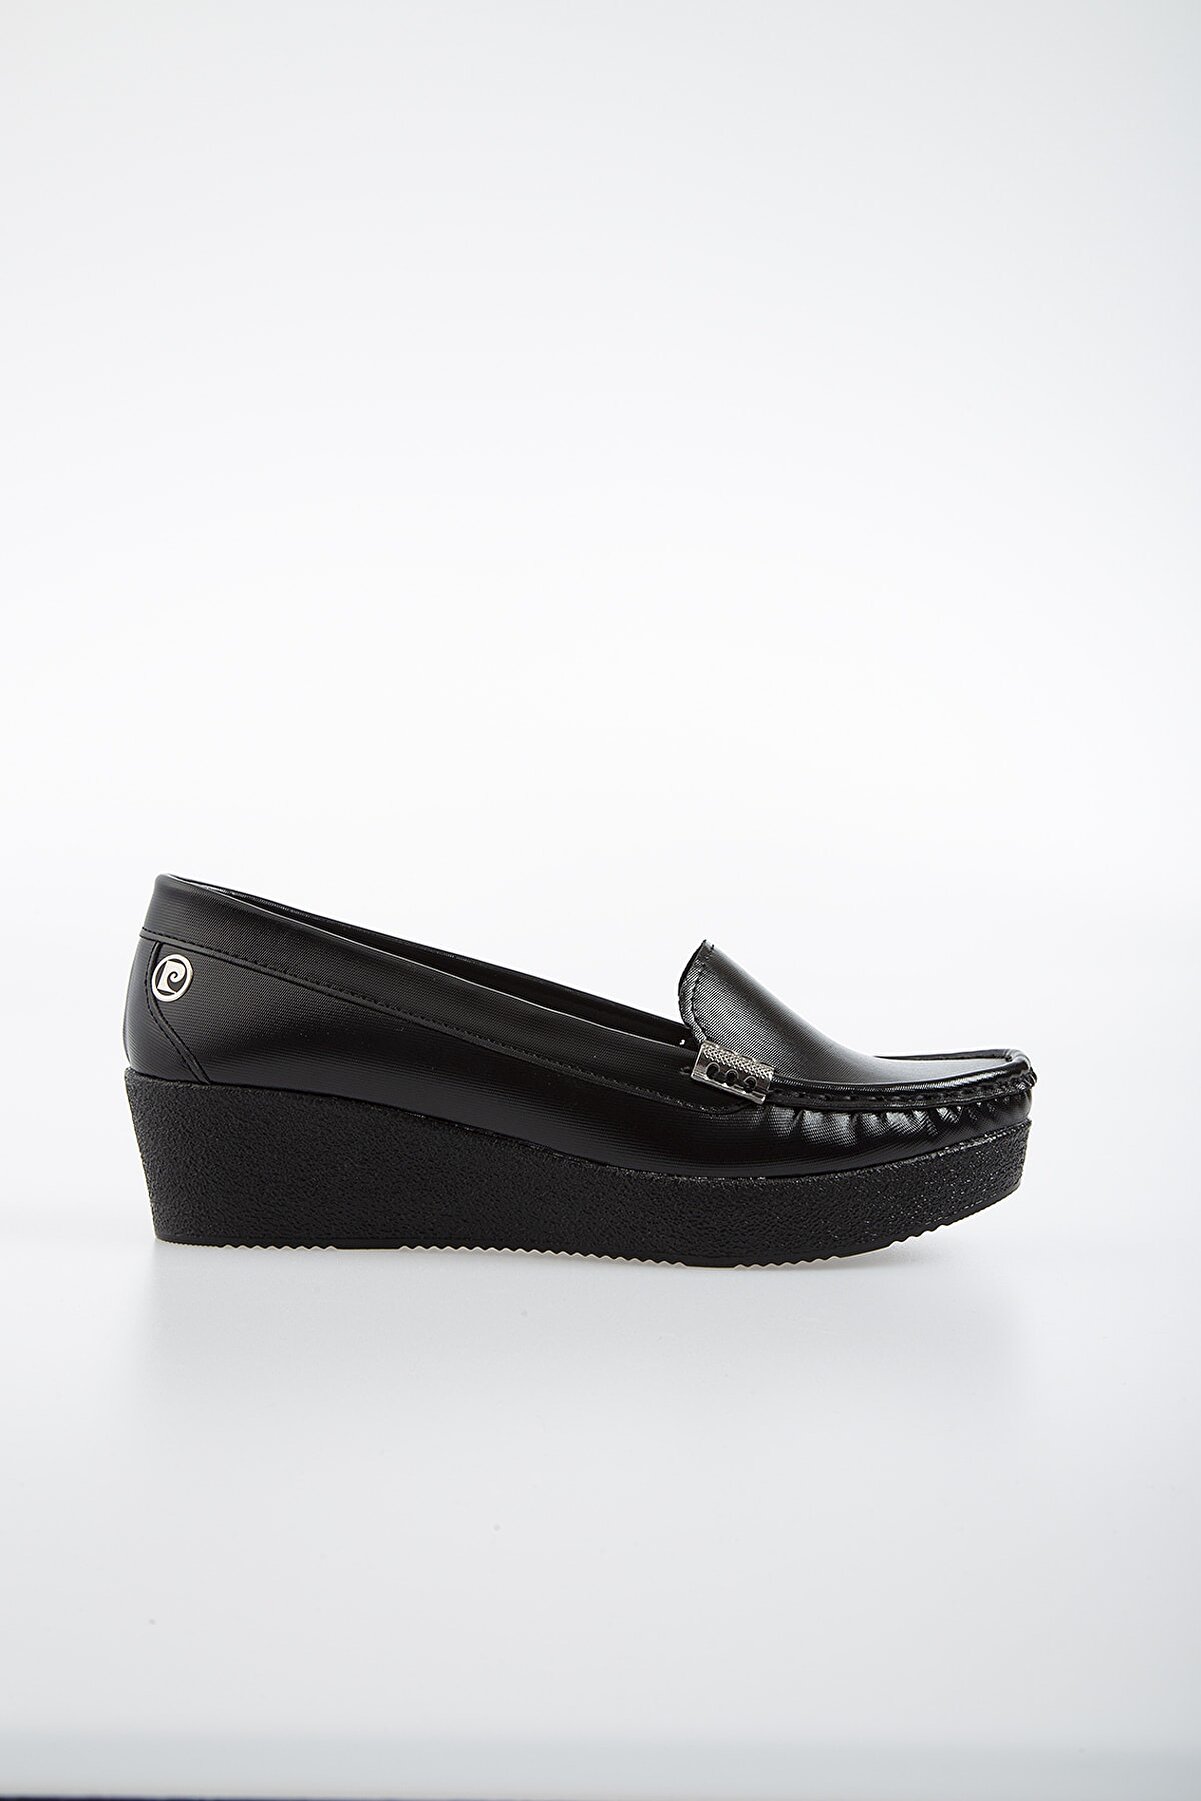 Pierre Cardin PC-50800 Siyah Kadın Ayakkabı